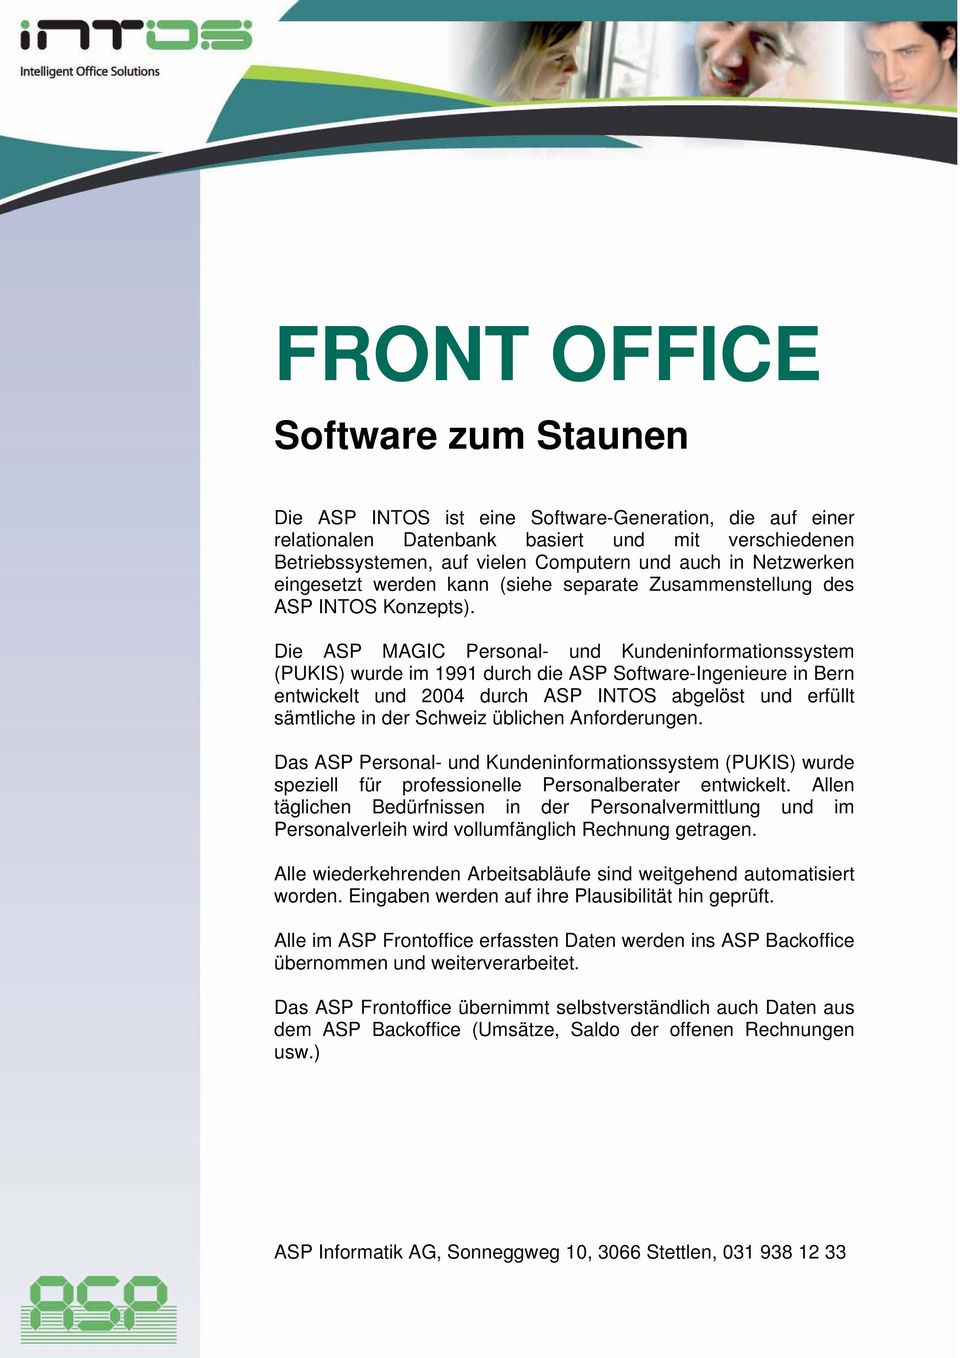 Die ASP MAGIC Personal- und Kundeninformationssystem (PUKIS) wurde im 1991 durch die ASP Software-Ingenieure in Bern entwickelt und 2004 durch ASP INTOS abgelöst und erfüllt sämtliche in der Schweiz